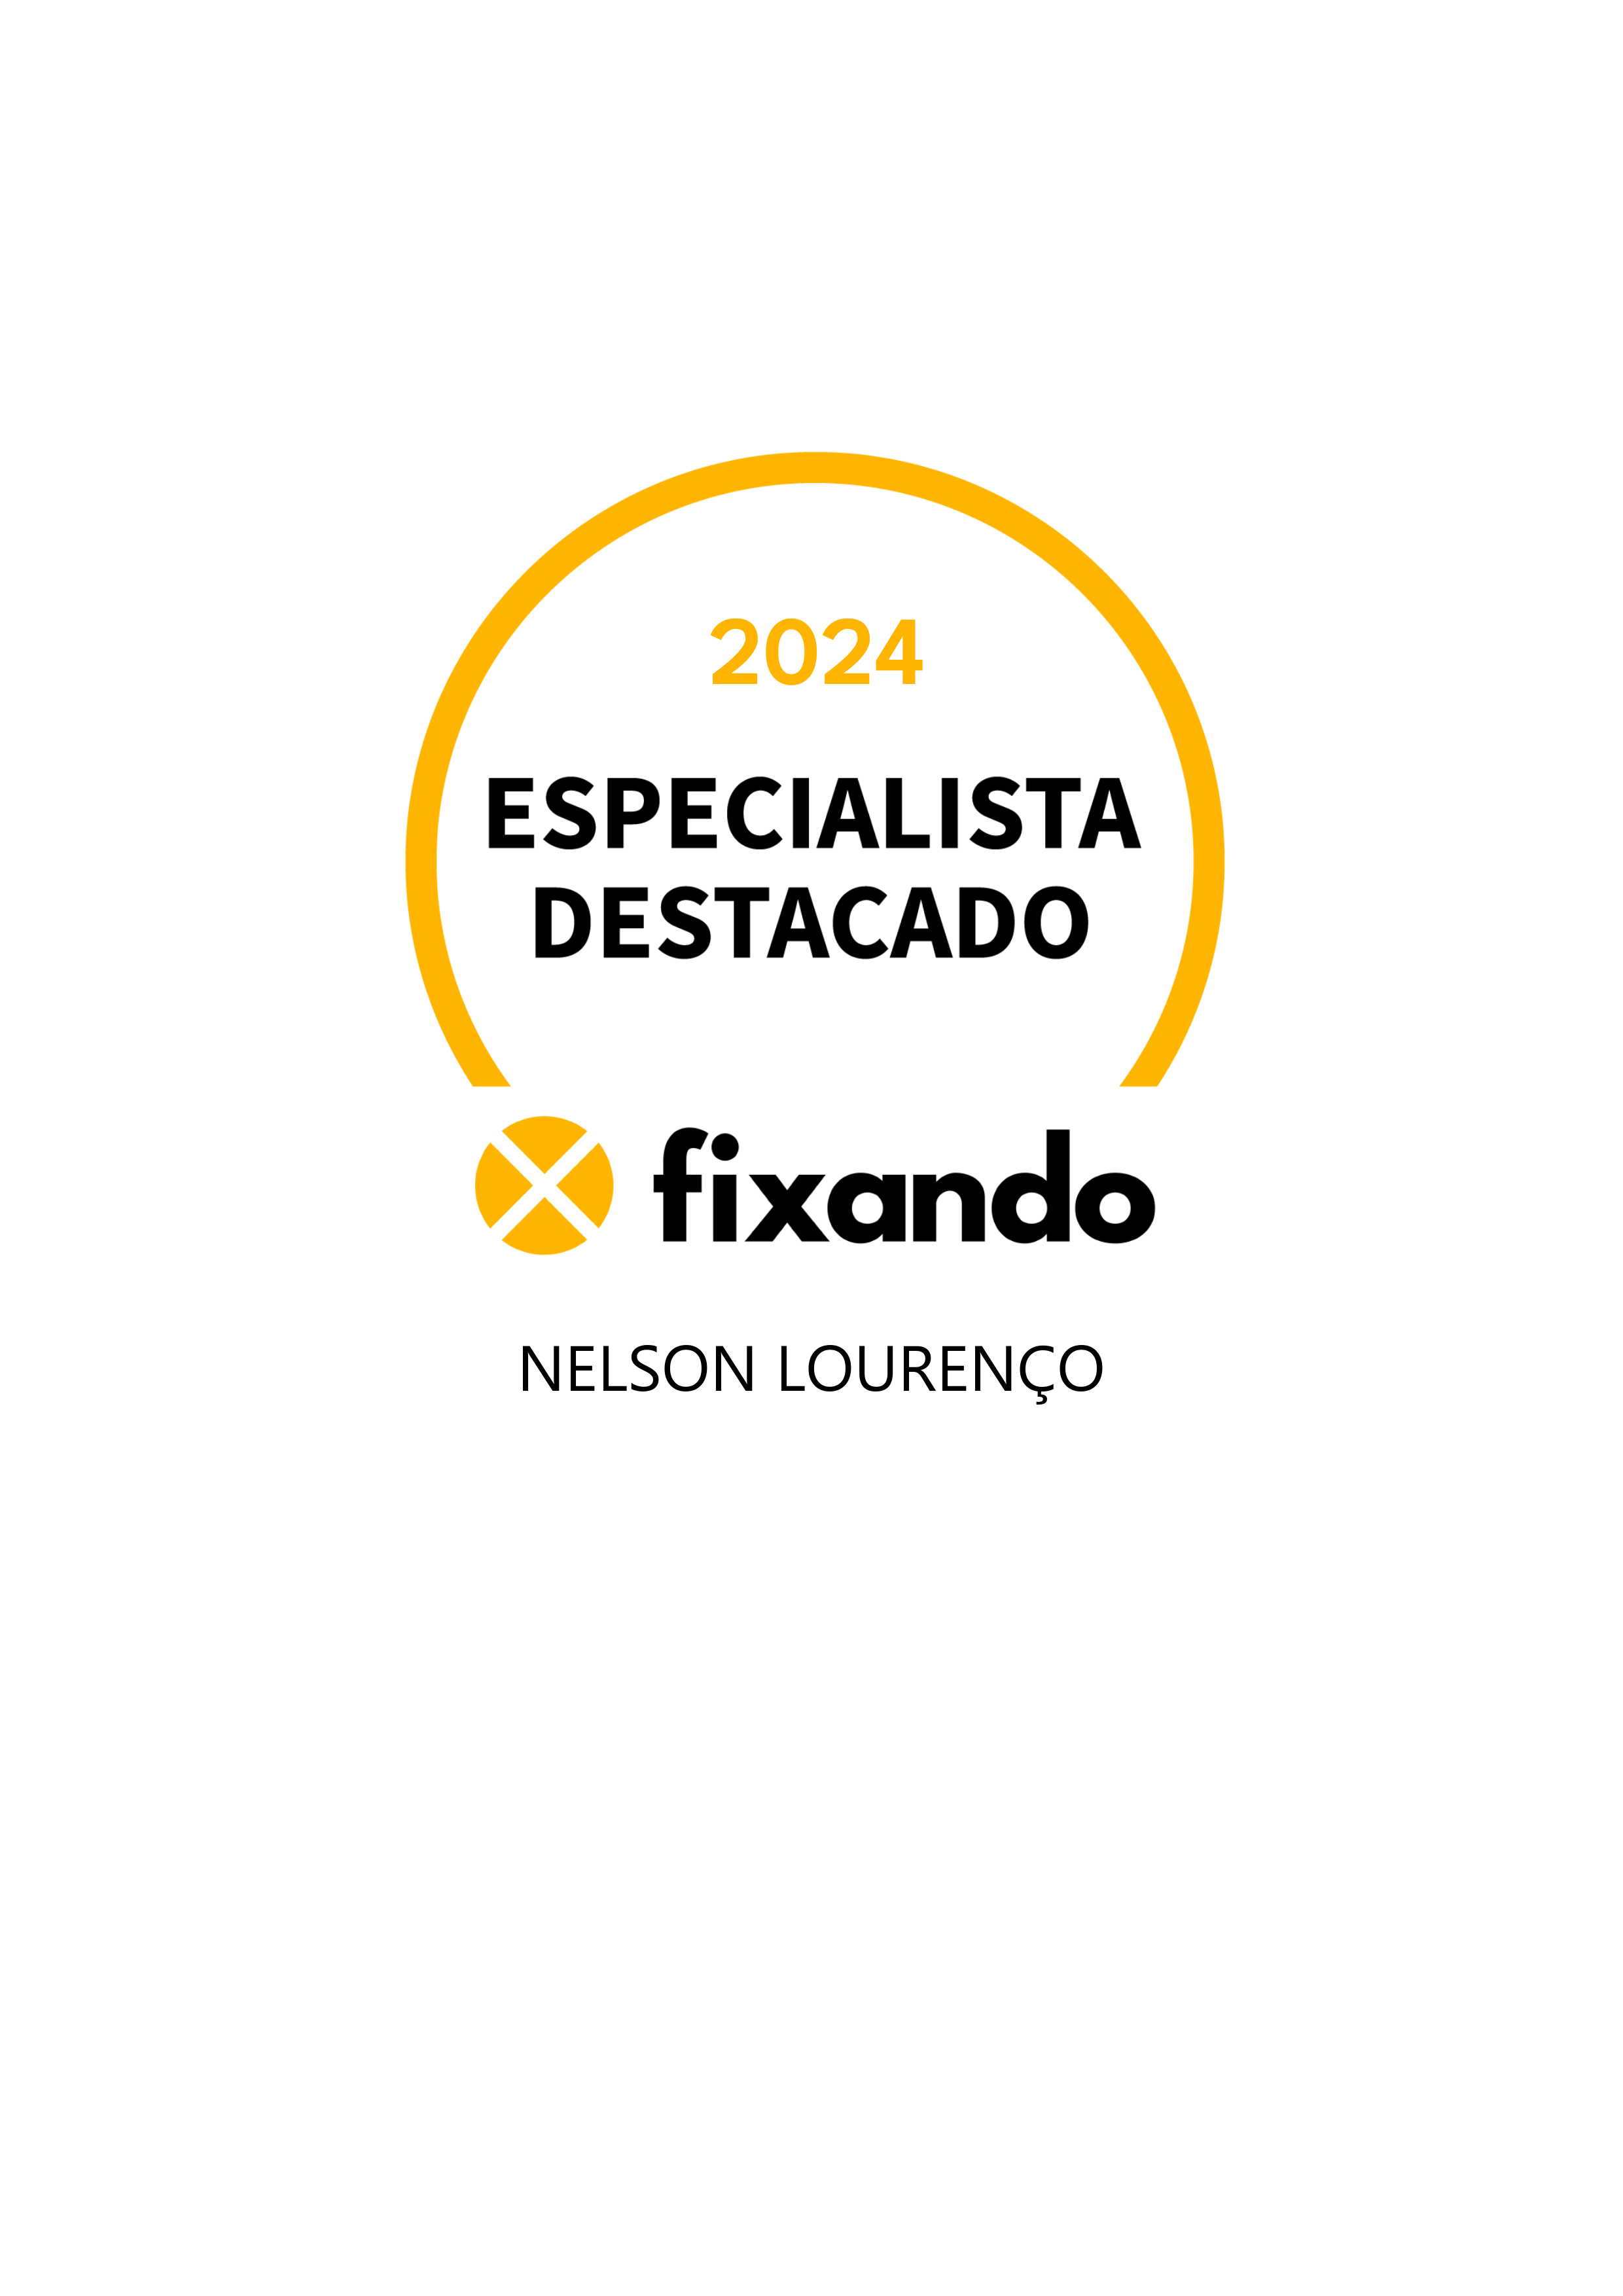 Nelson Lourenço - Odivelas - Suporte Administrativo